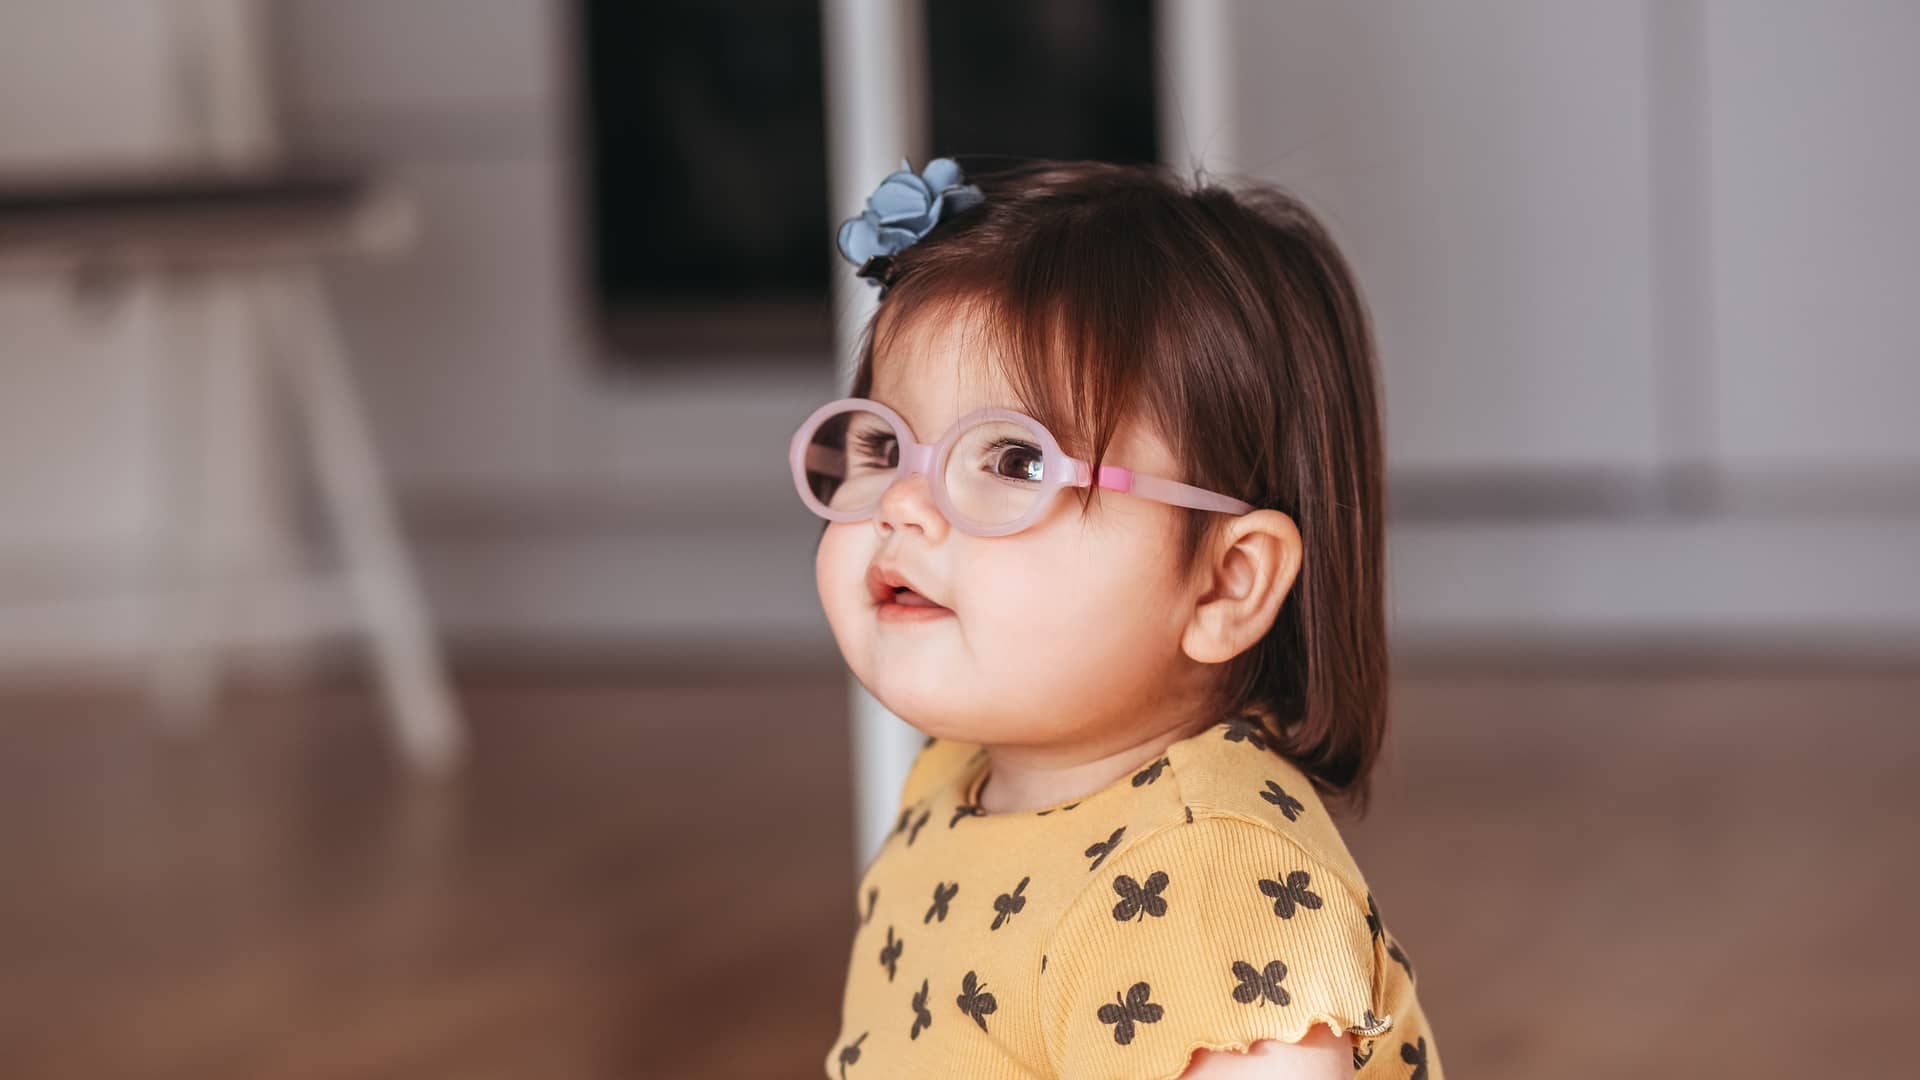 niña pequeña con gafas mirando hacia arriba porque tiene astigmatismo infantil por la curvatura de sus ojos